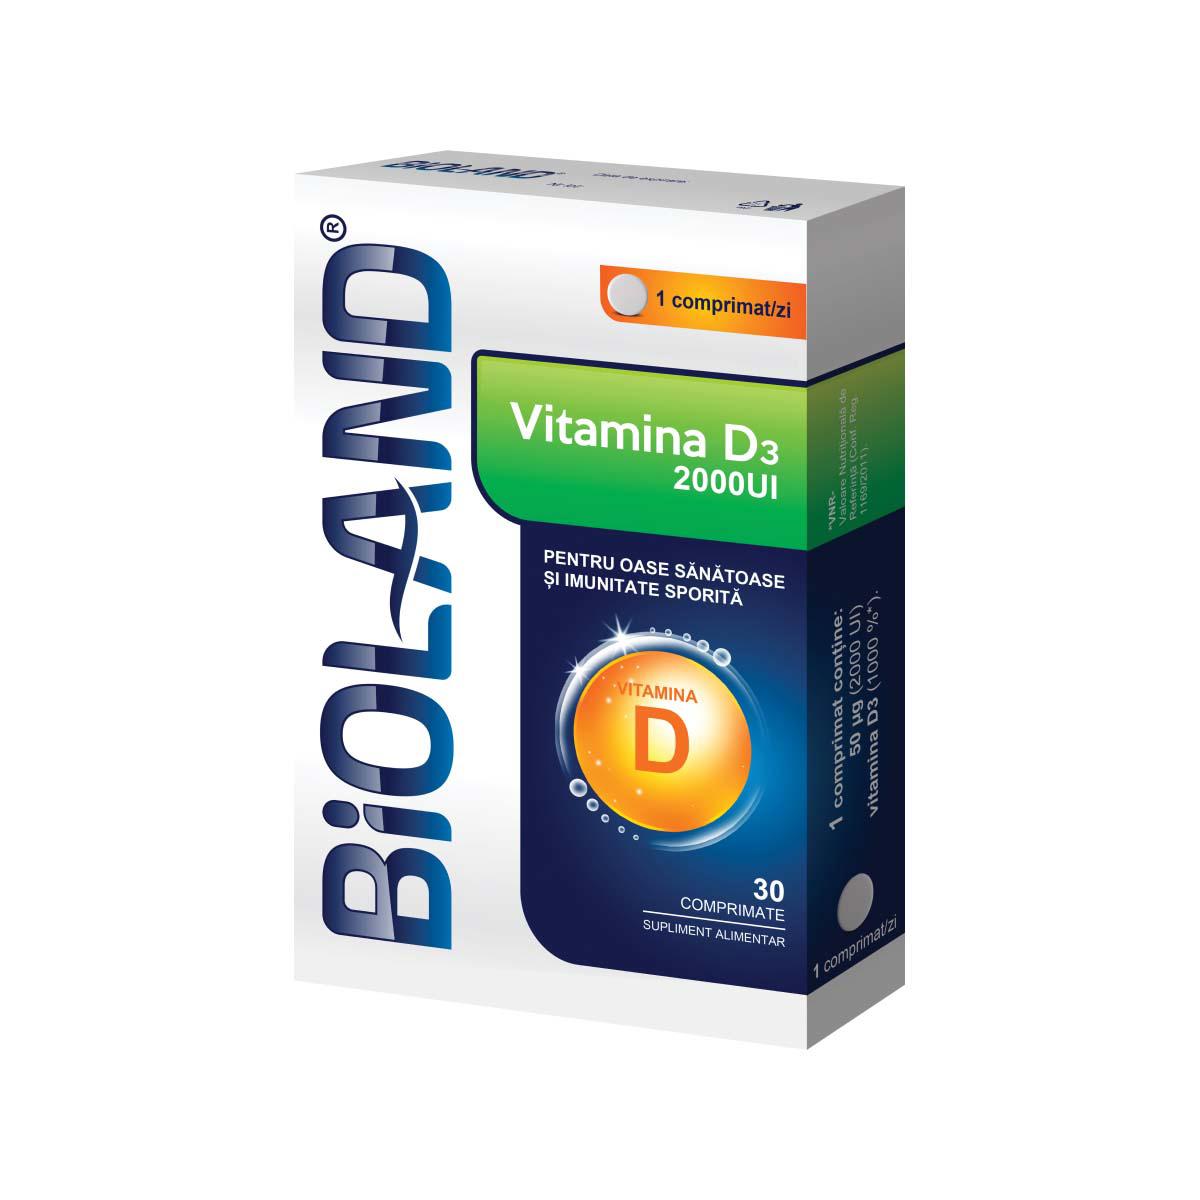 Bioland Vitamina D3 2000UI 30 comprimate Biofarm